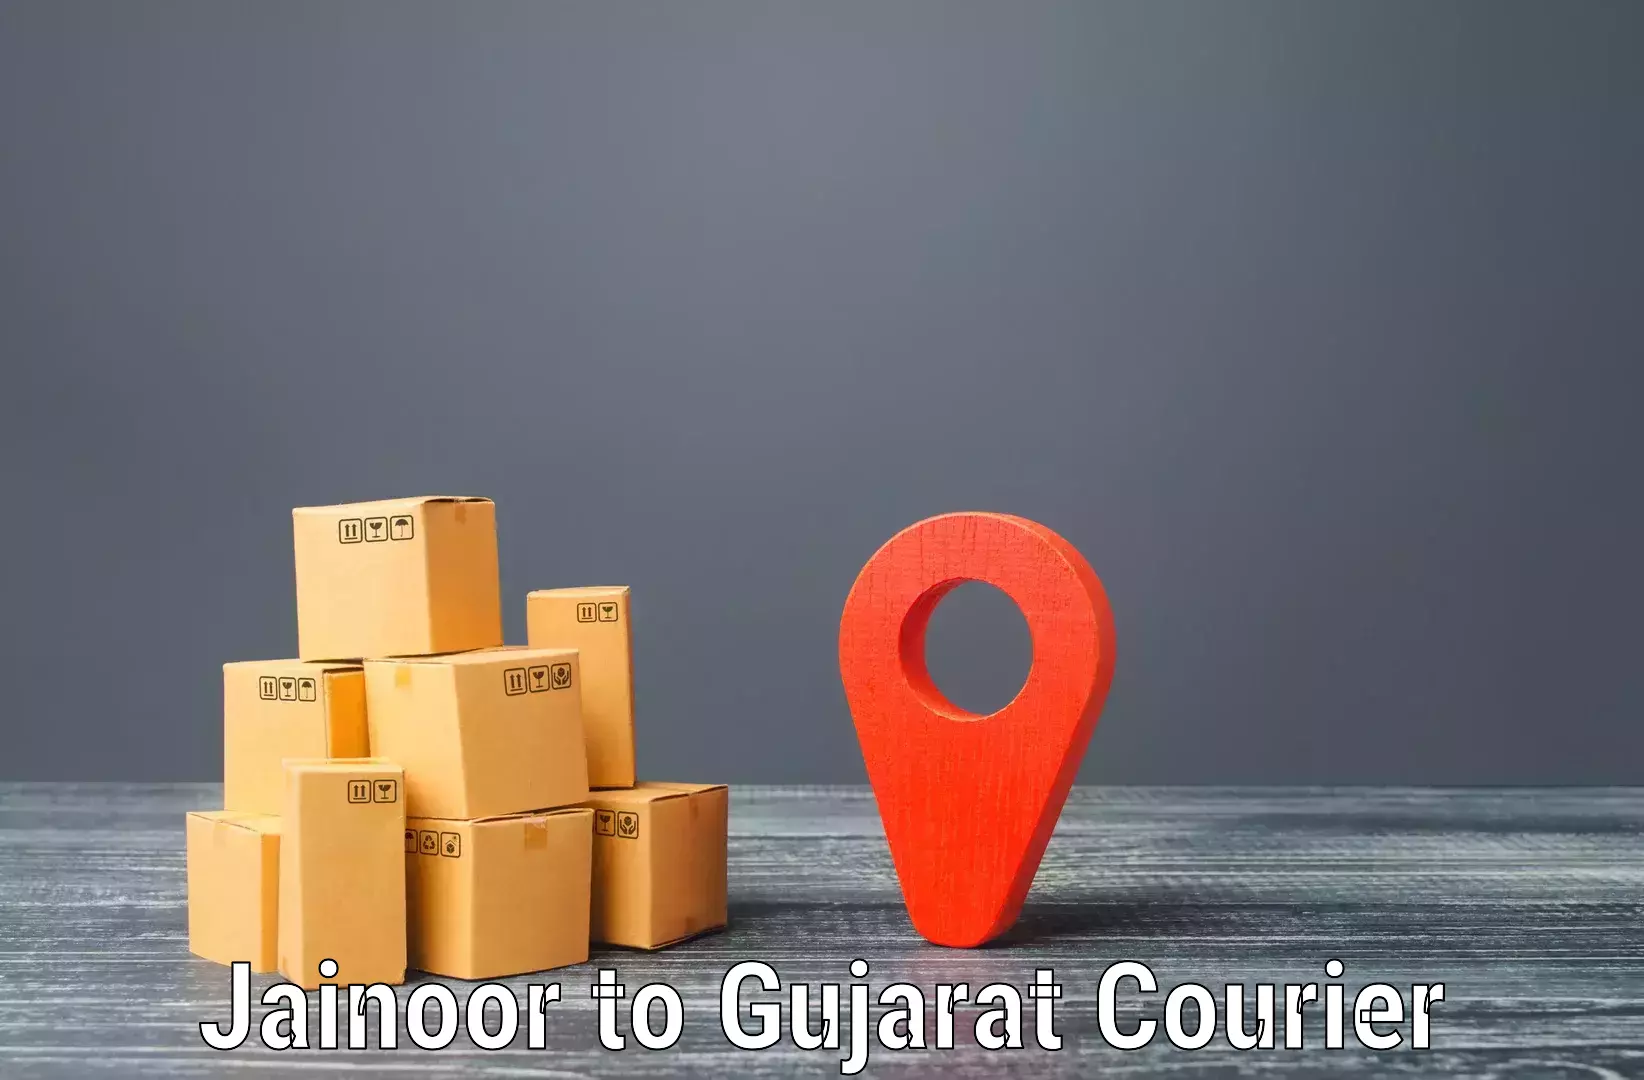 Cargo courier service Jainoor to Manavadar